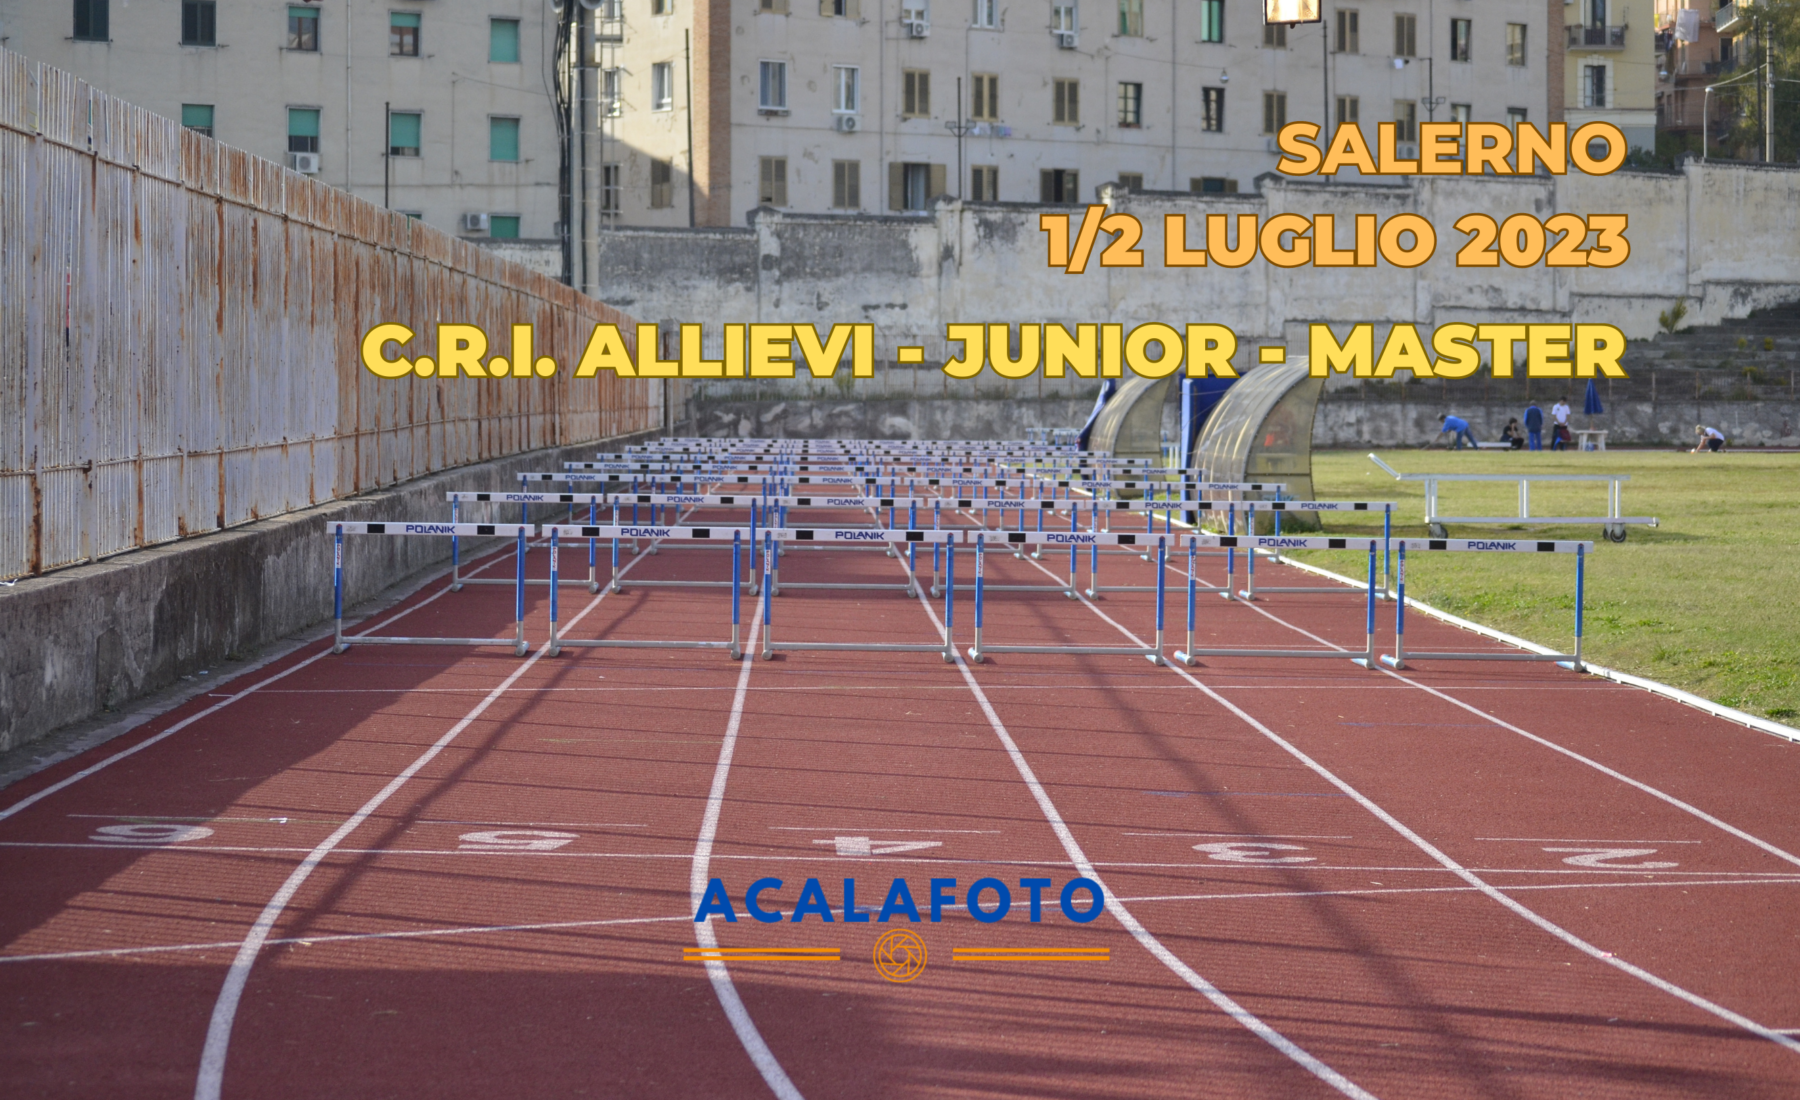 Foto C.R.I. Allievi-Junior-Master 1-2 Luglio 2023 Salerno